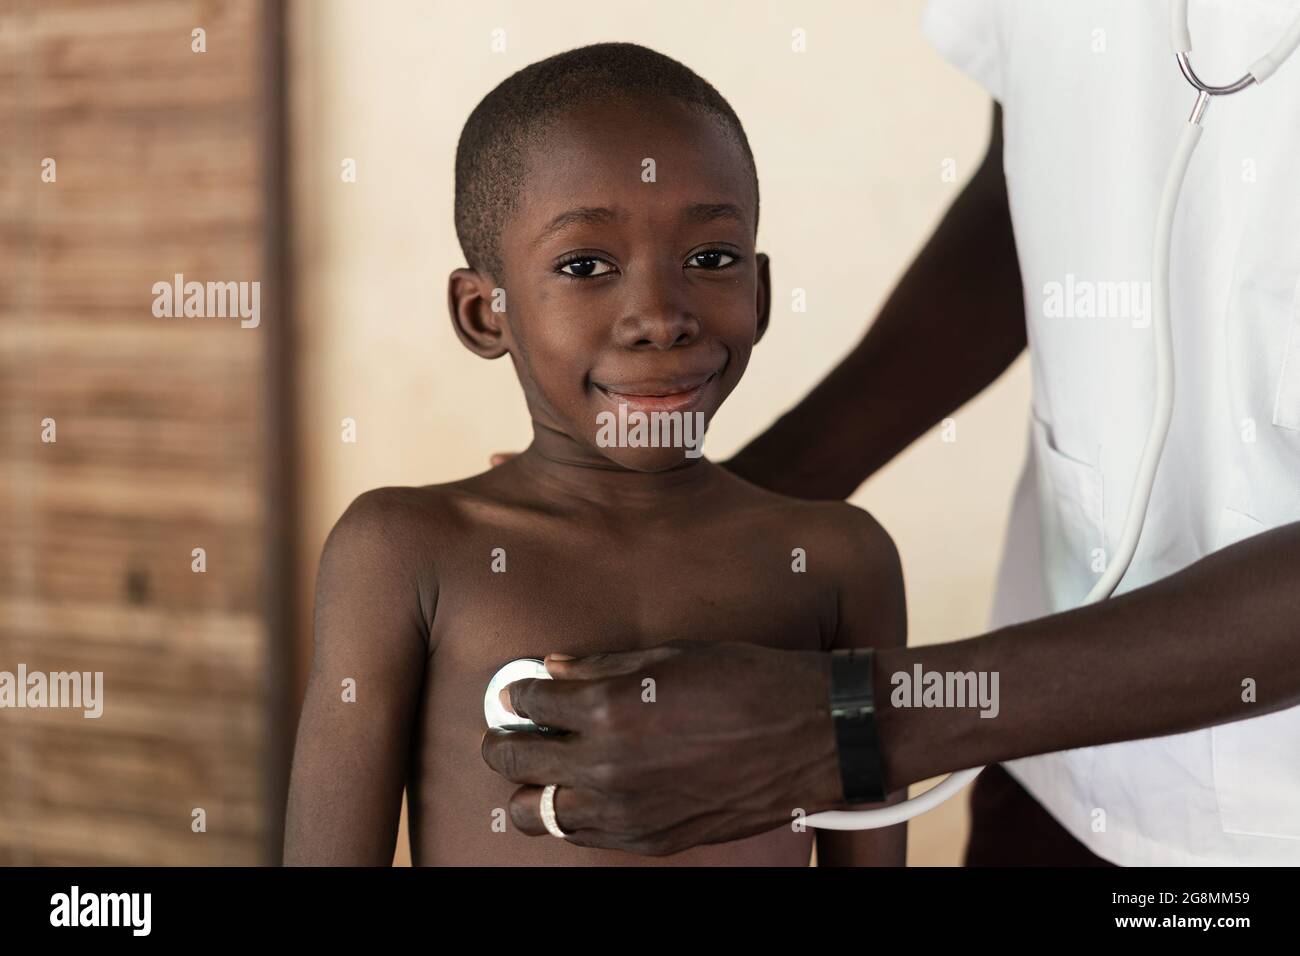 C'est l'image d'un médecin noir africain qui aide un petit garçon africain à sa place dans un village rural près de Bamako, Mali. Banque D'Images